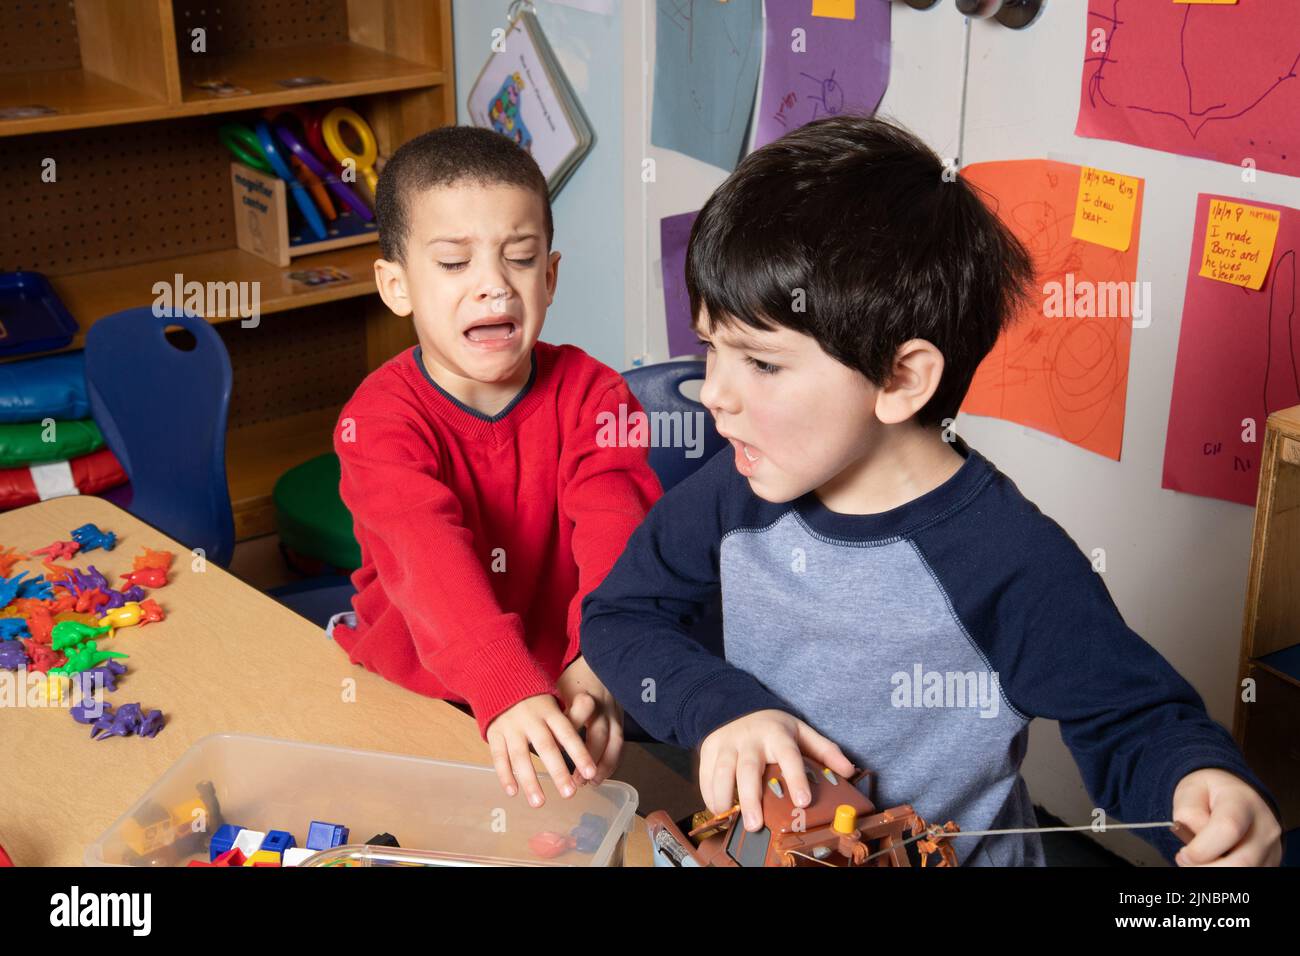 Bildung Vorschule Kinderbetreuung 3 Jahre alt zwei Jungen Konflikt über Spielzeug Konflikt Lösung Serie # Stockfoto